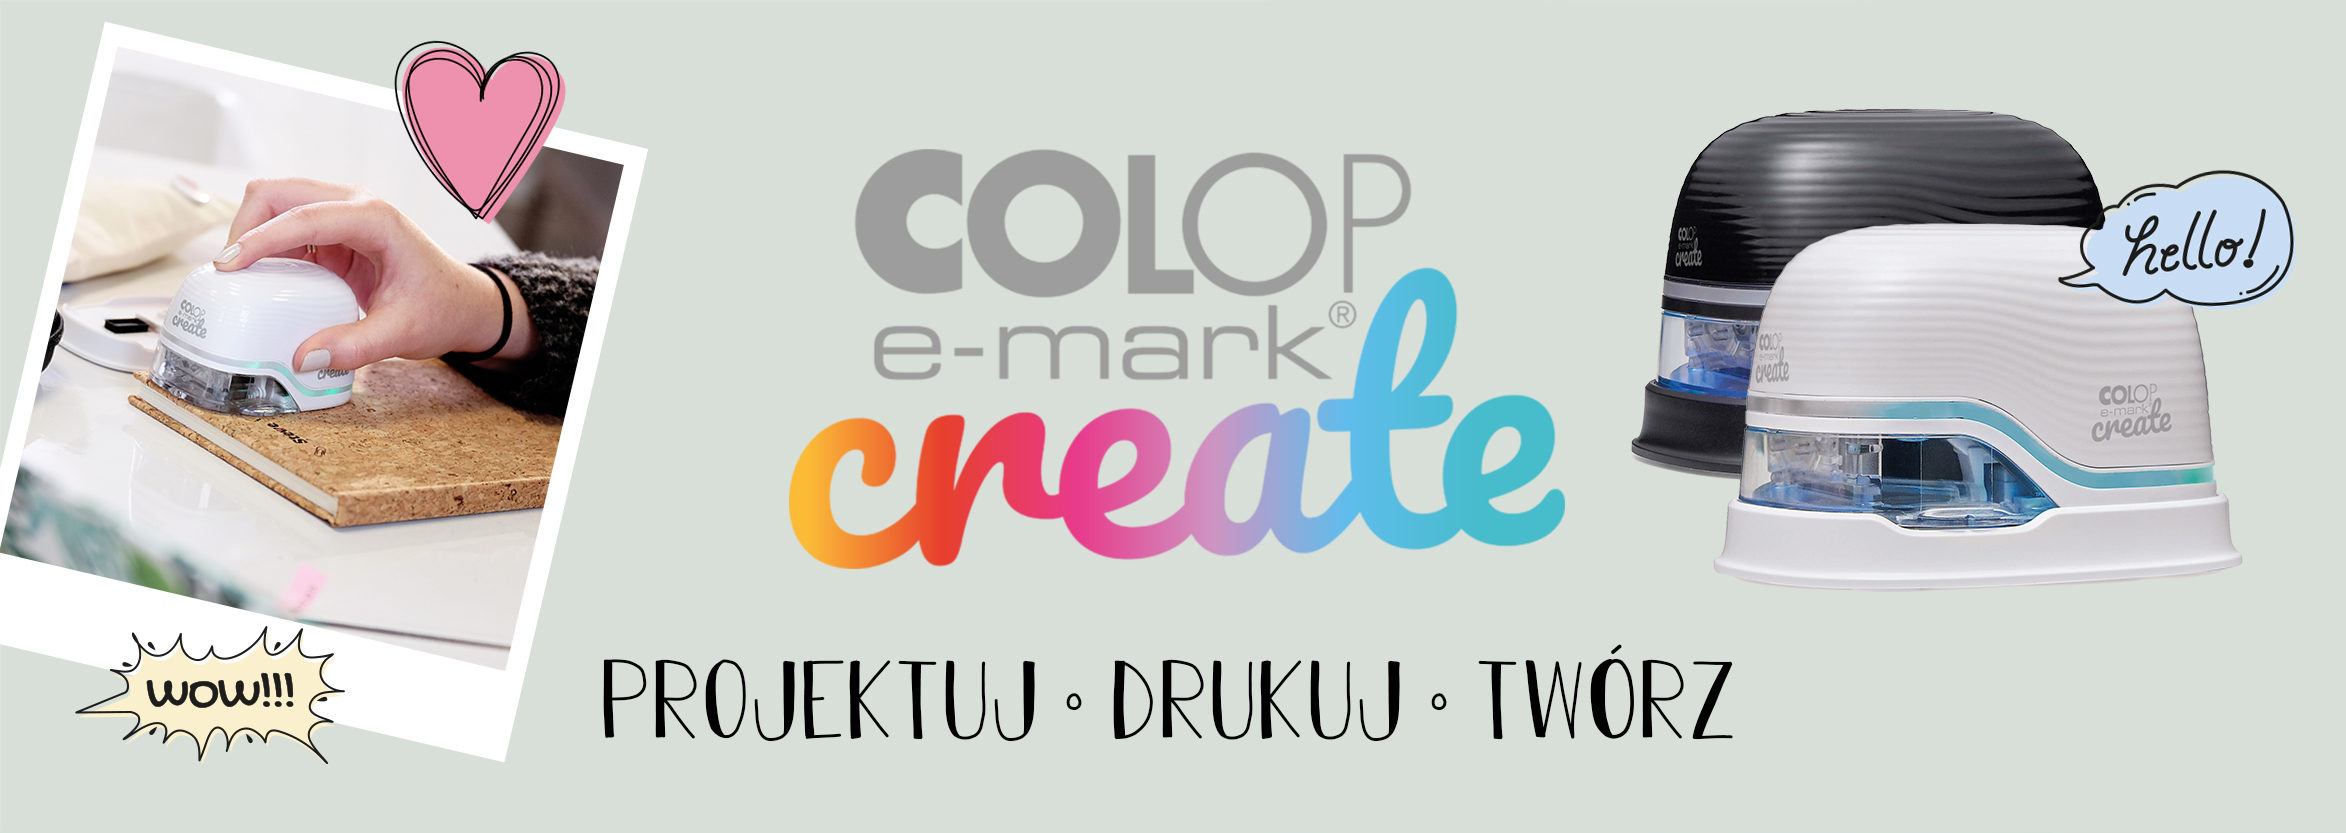 COLOP E-mark CREATE